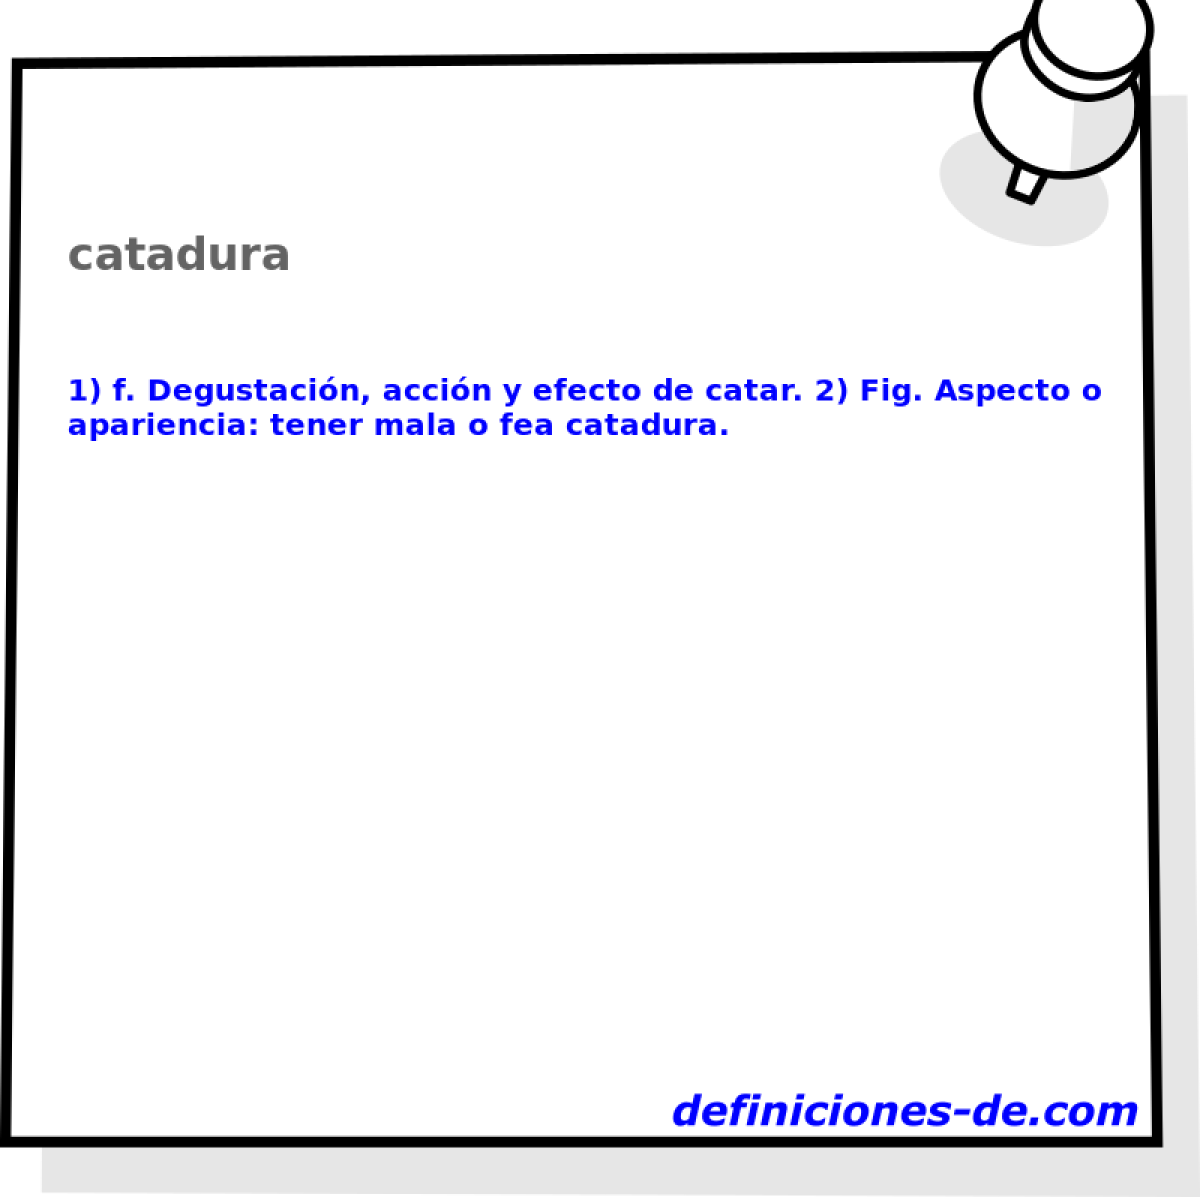 catadura 